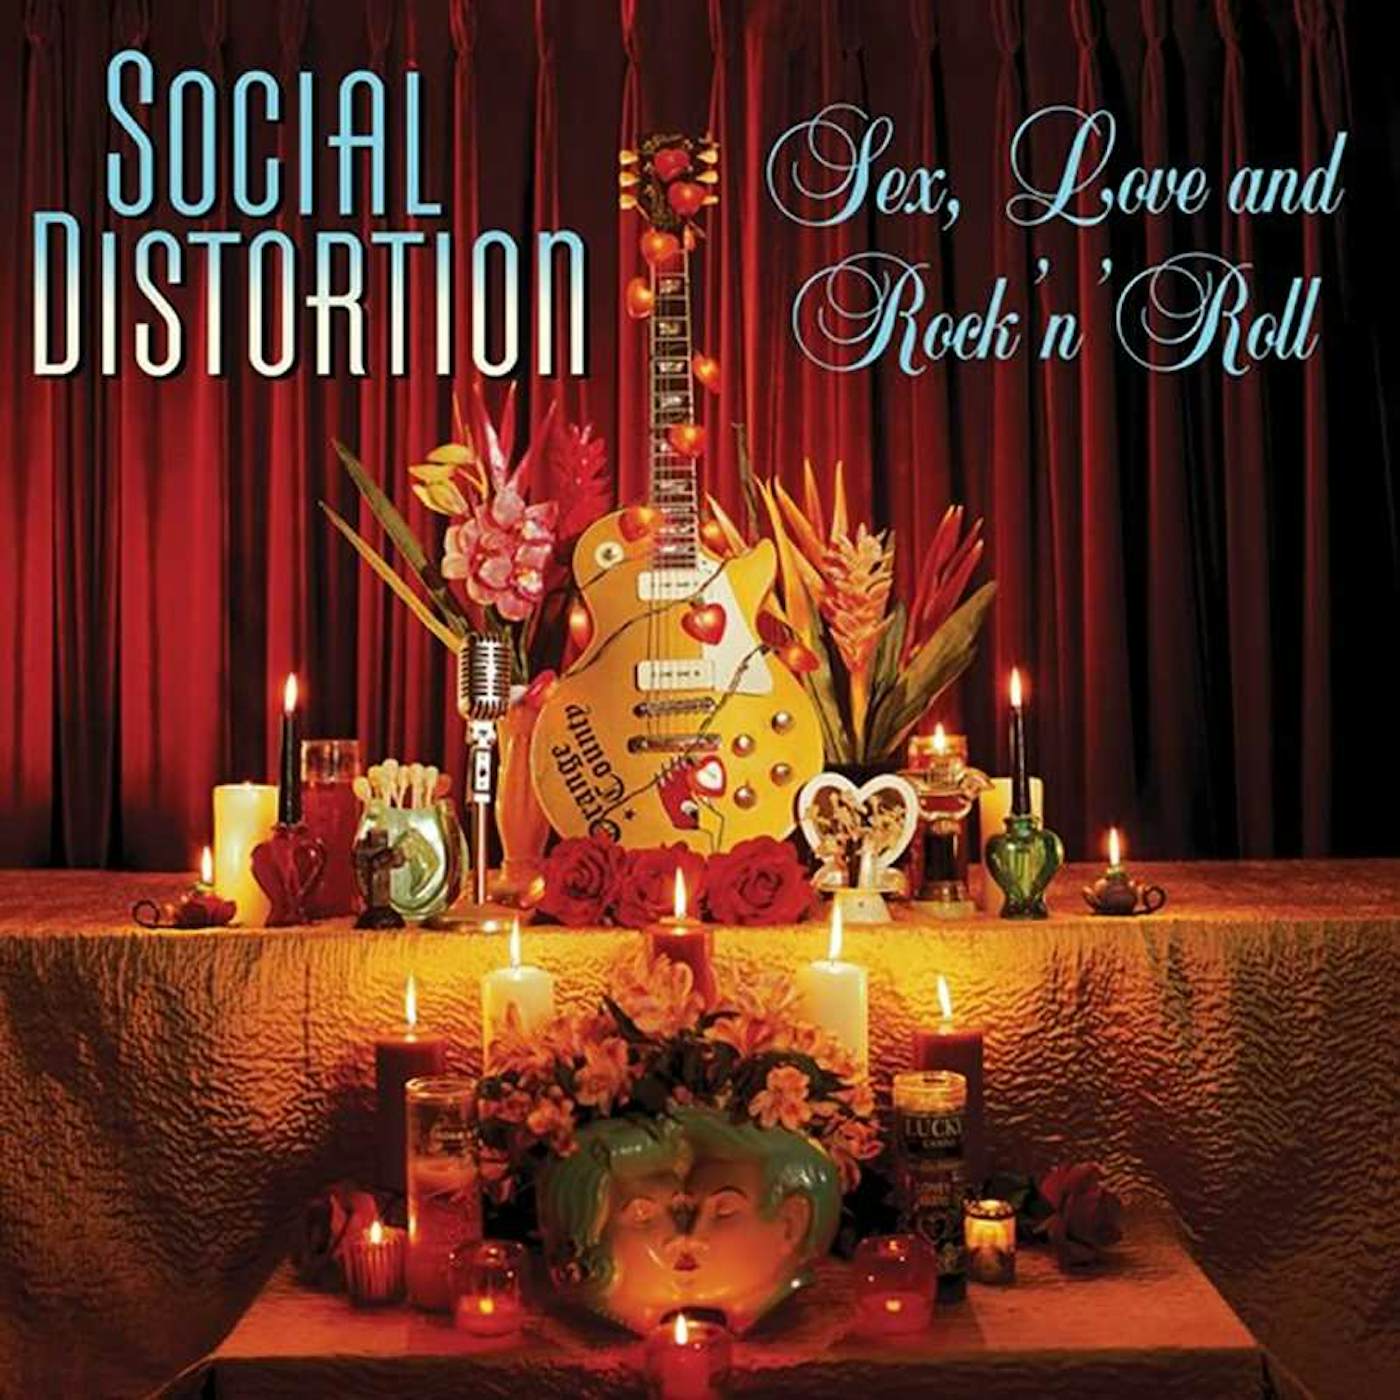 Social Distortion SEX, LOVE & ROCK N ROLL Vinyl Record